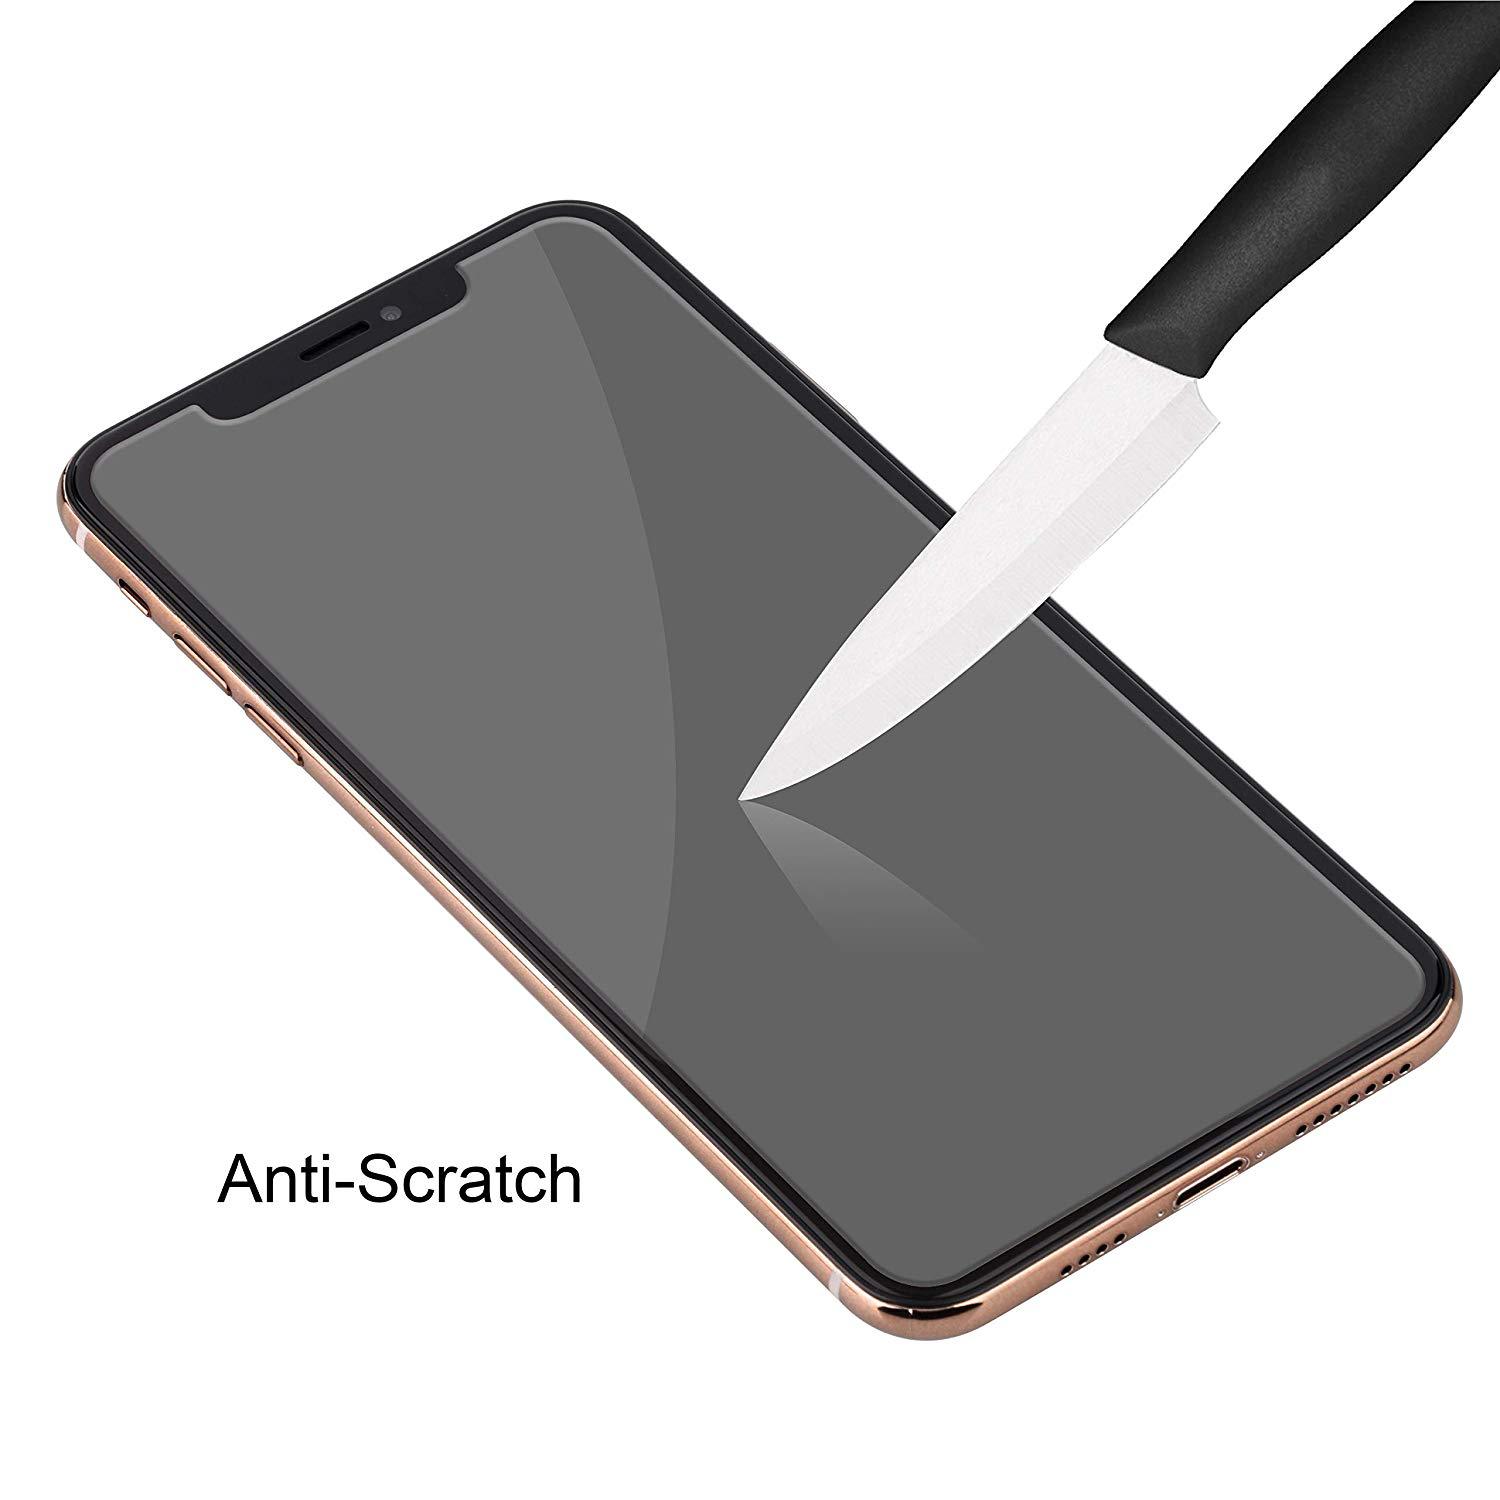 Bảo vệ màn hình cho iPhone 12 11 pro XR XS MAX 7 8 plus (Bảo hiểm toàn phần) ， Bảo vệ màn hình bằng kính cường lực chống gián điệp Elecshion cho iPhone 11 / XR (6.1 ''), Không bong bóng